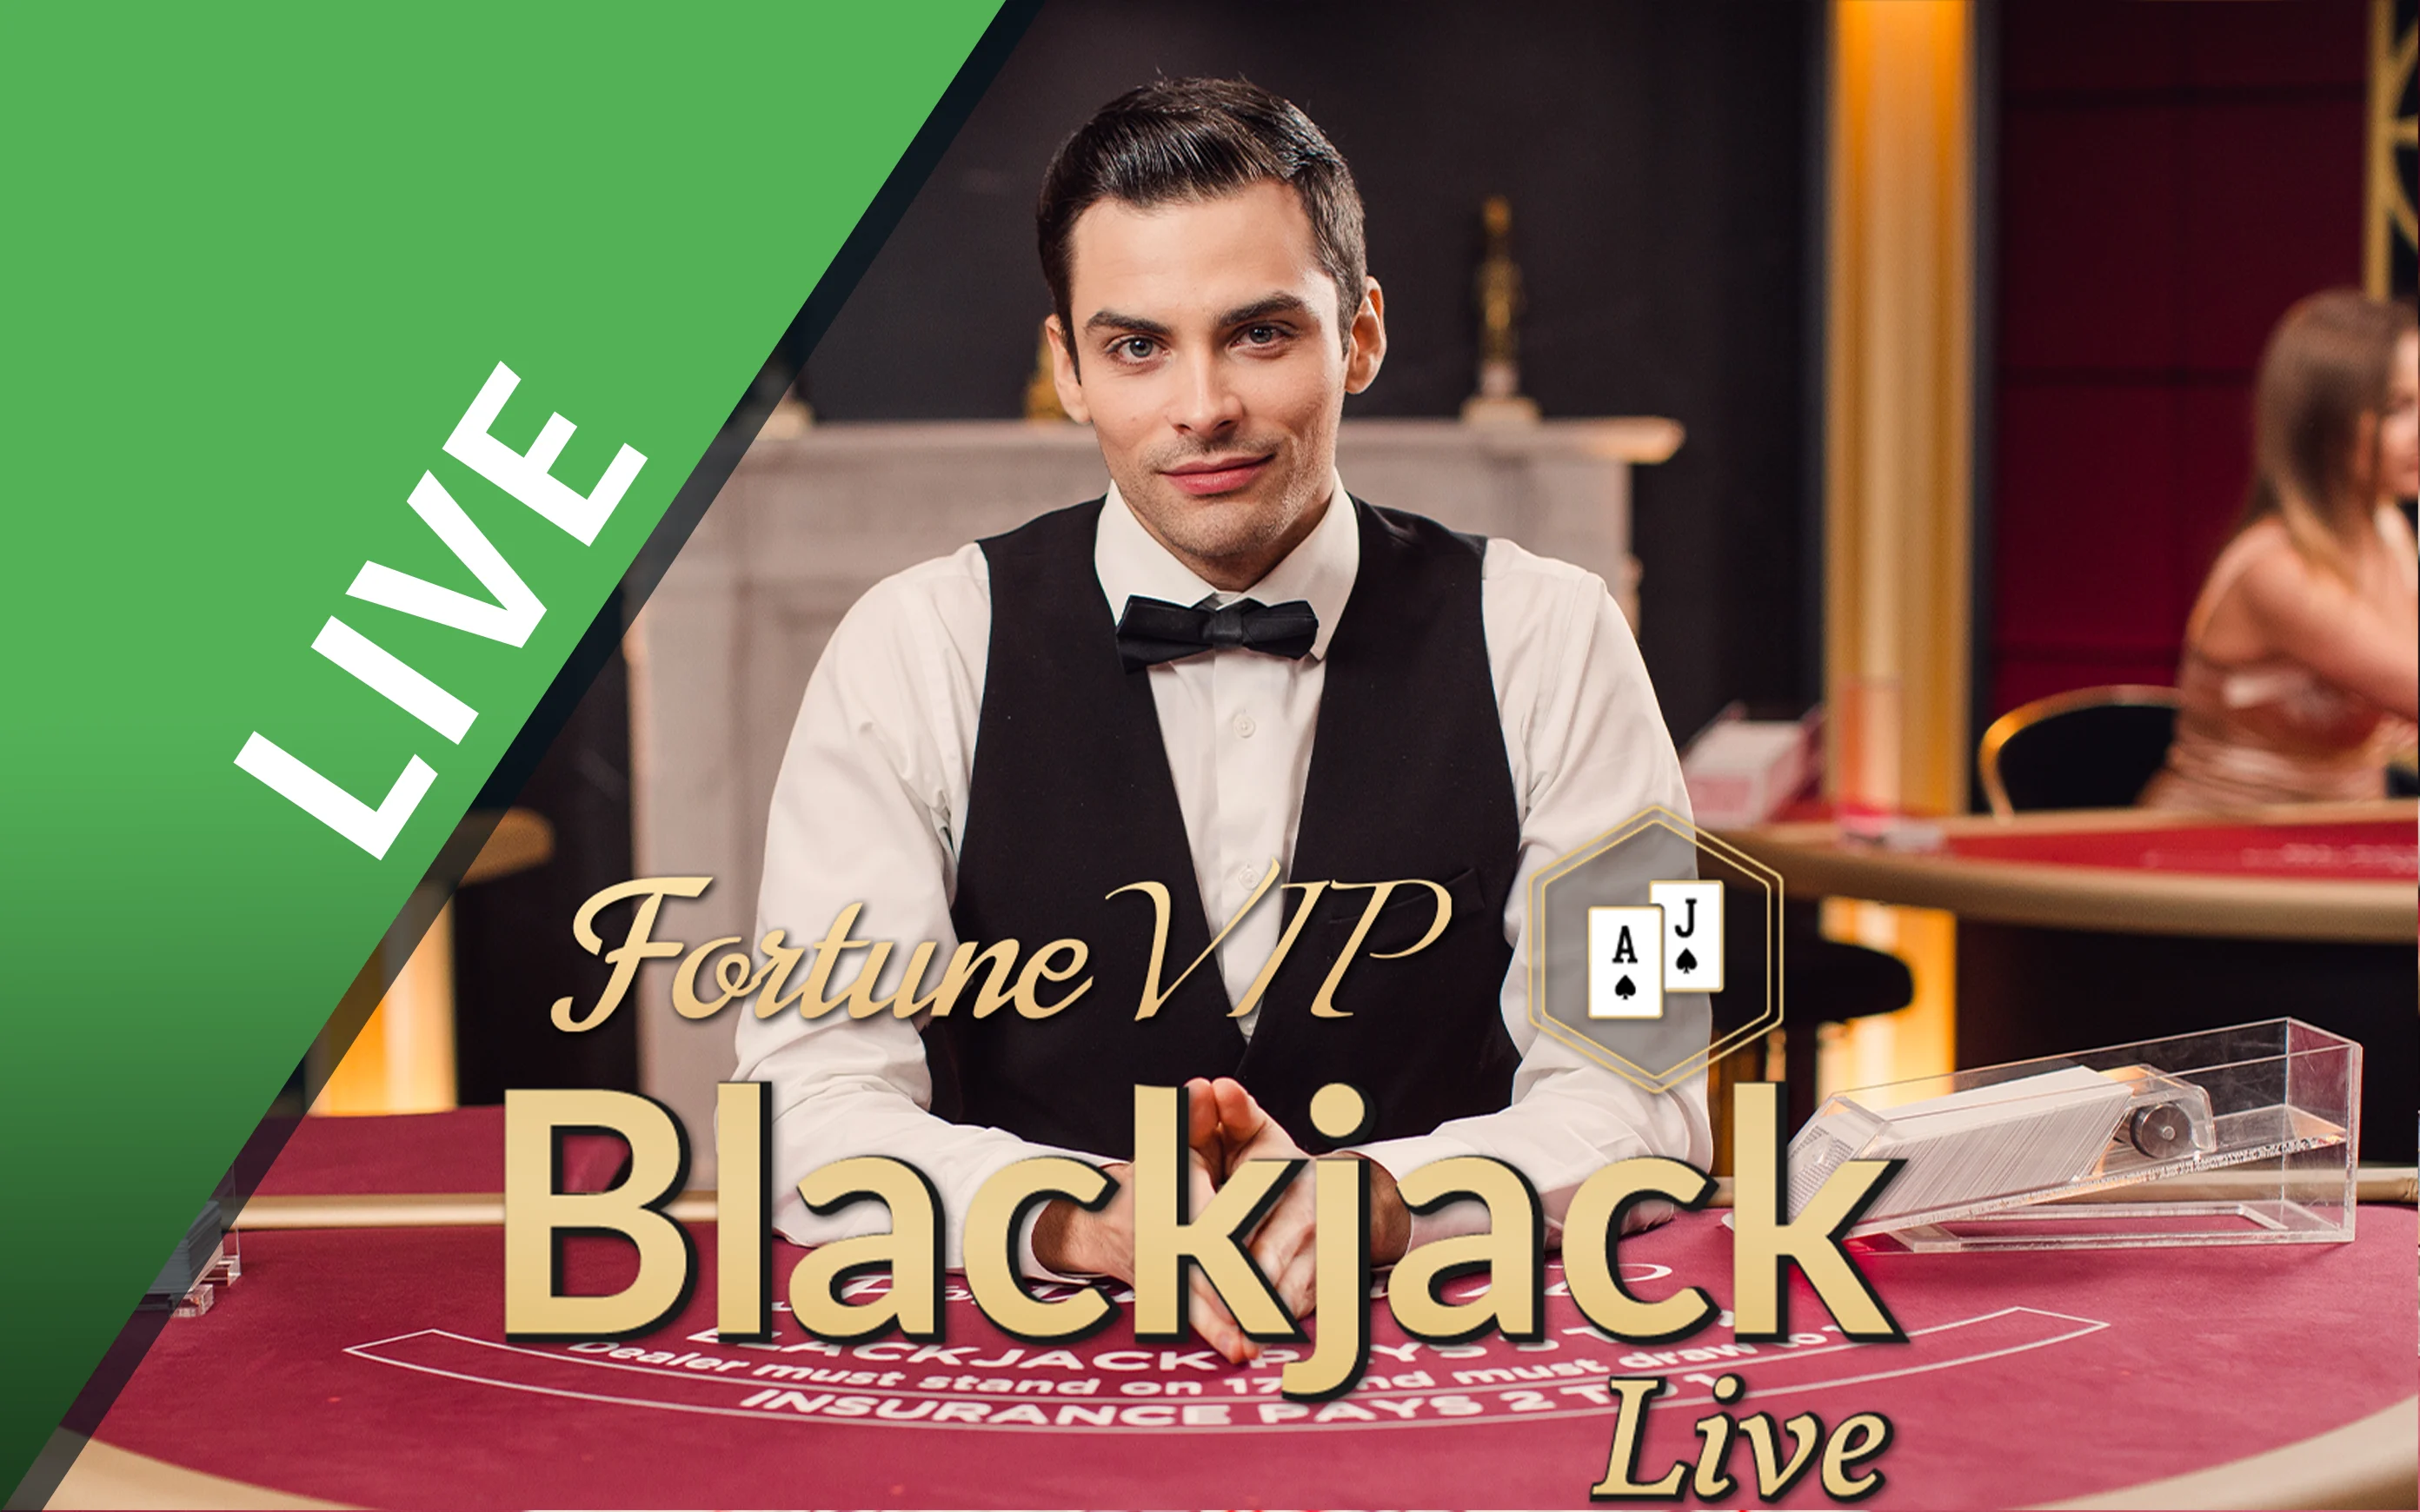 Speel Blackjack Fortune VIP op Starcasino.be online casino